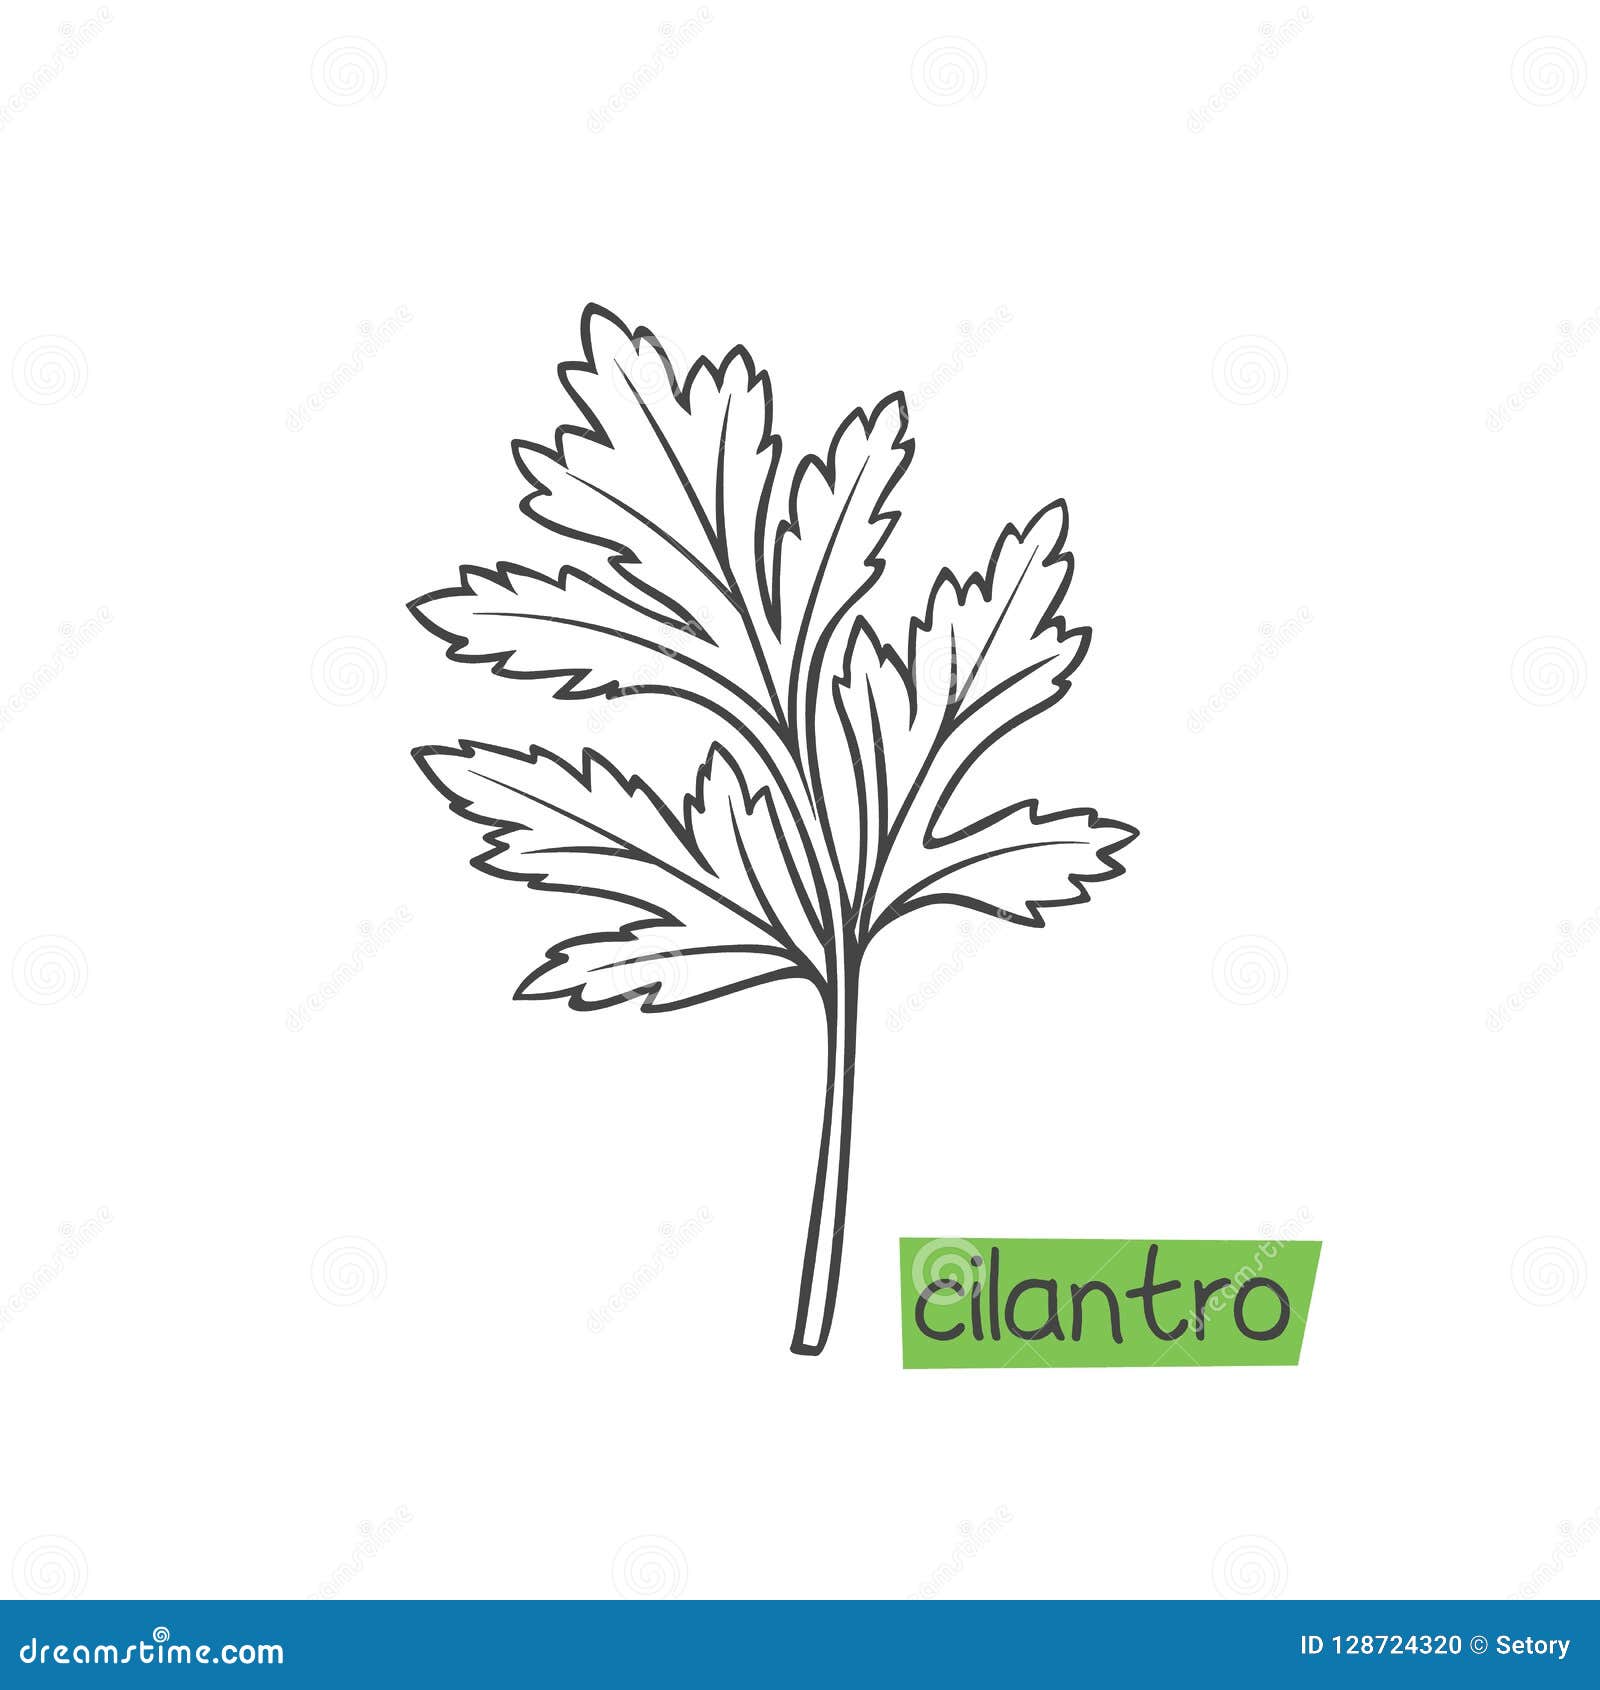 Cilantro hand drawn stock vector. Illustration of cilantro - 128724320